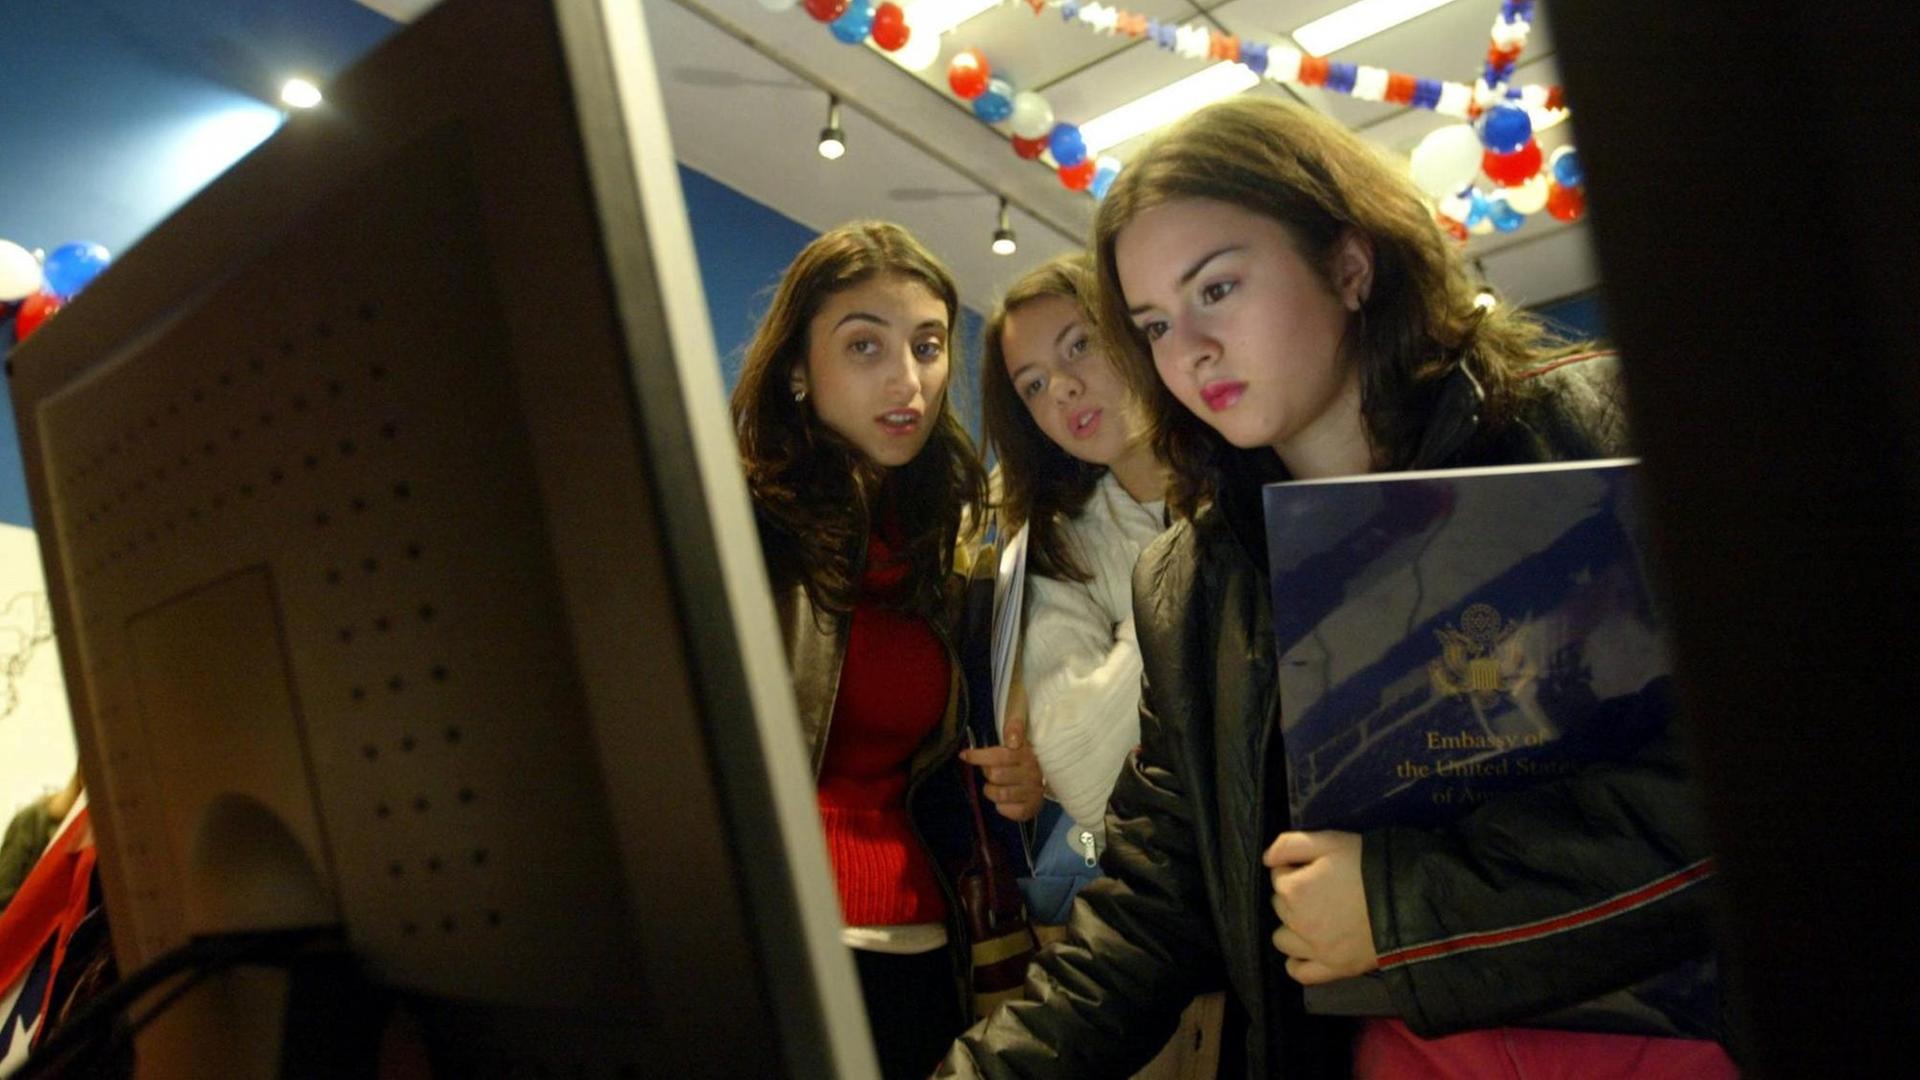 Jugendliche in Rumäniens Hauptstadt Bukarest blicken auf einen Computerbildschirm während der US-Präsidentschaftswahl 2004.